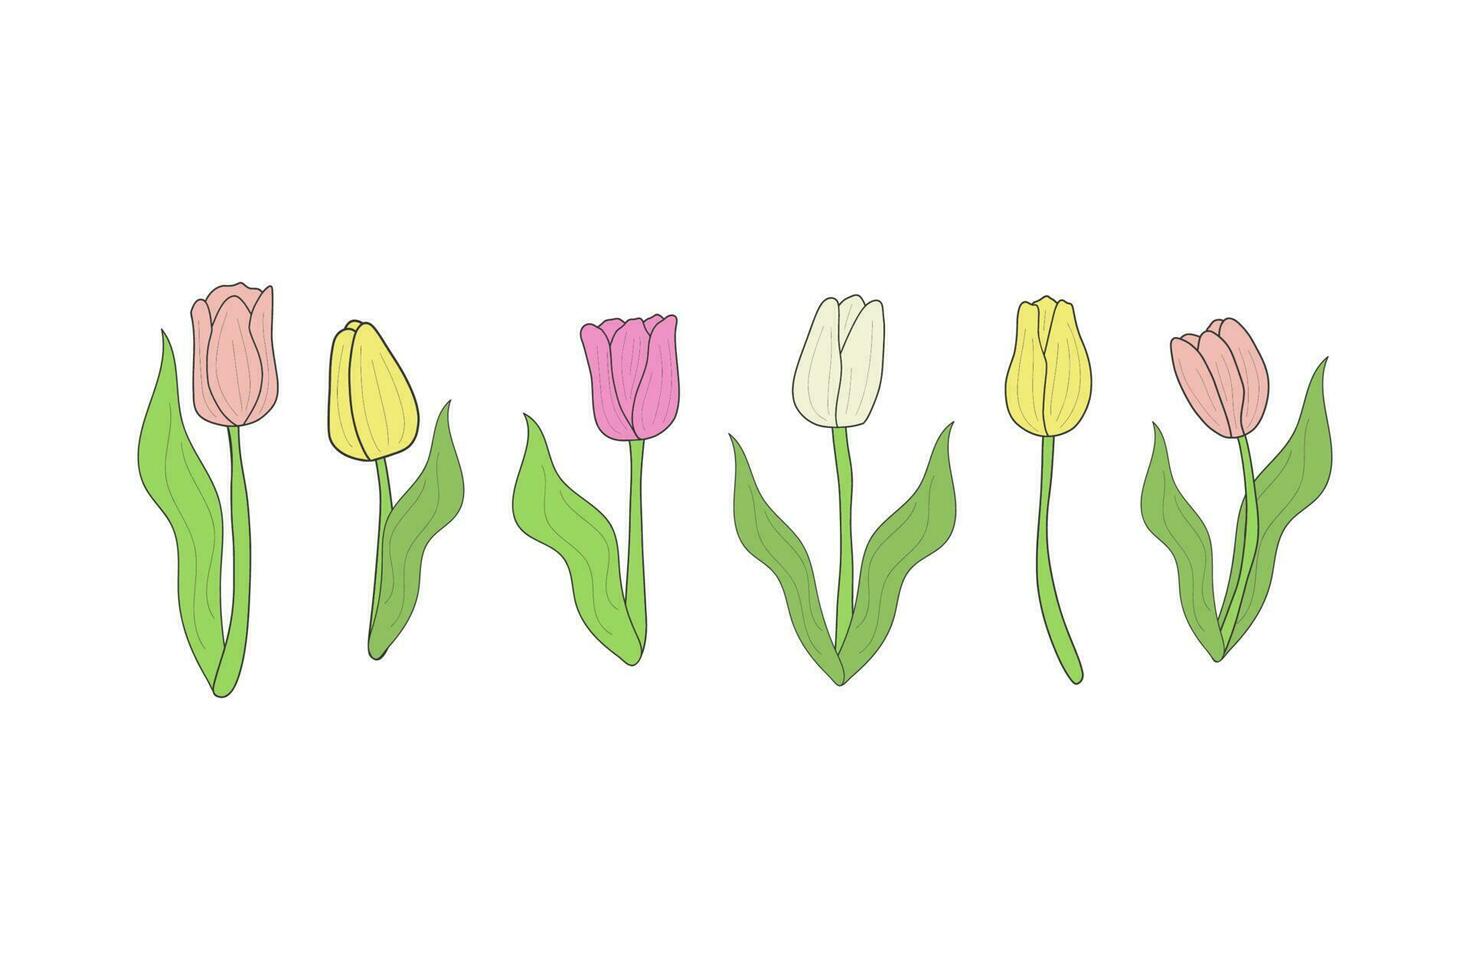 conjunto do tulipas com folhas do diferente cores amarelo, rosa, branco. para impressão, colagem, bandeira, cartão postal. vetor ilustração